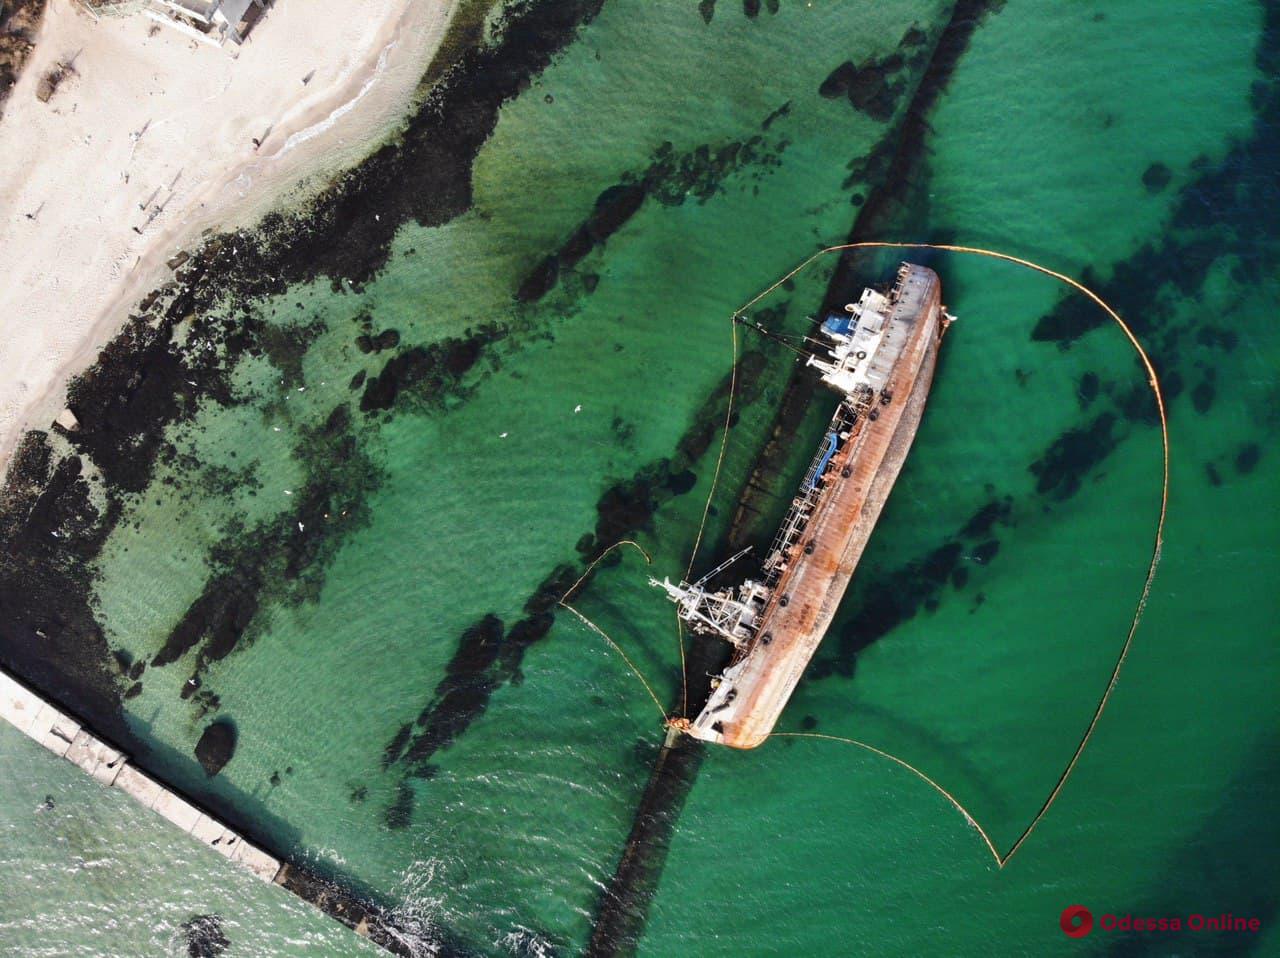 Ржавый танкер Delfi с высоты птичьего полета (фото, видео с квадрокоптера)